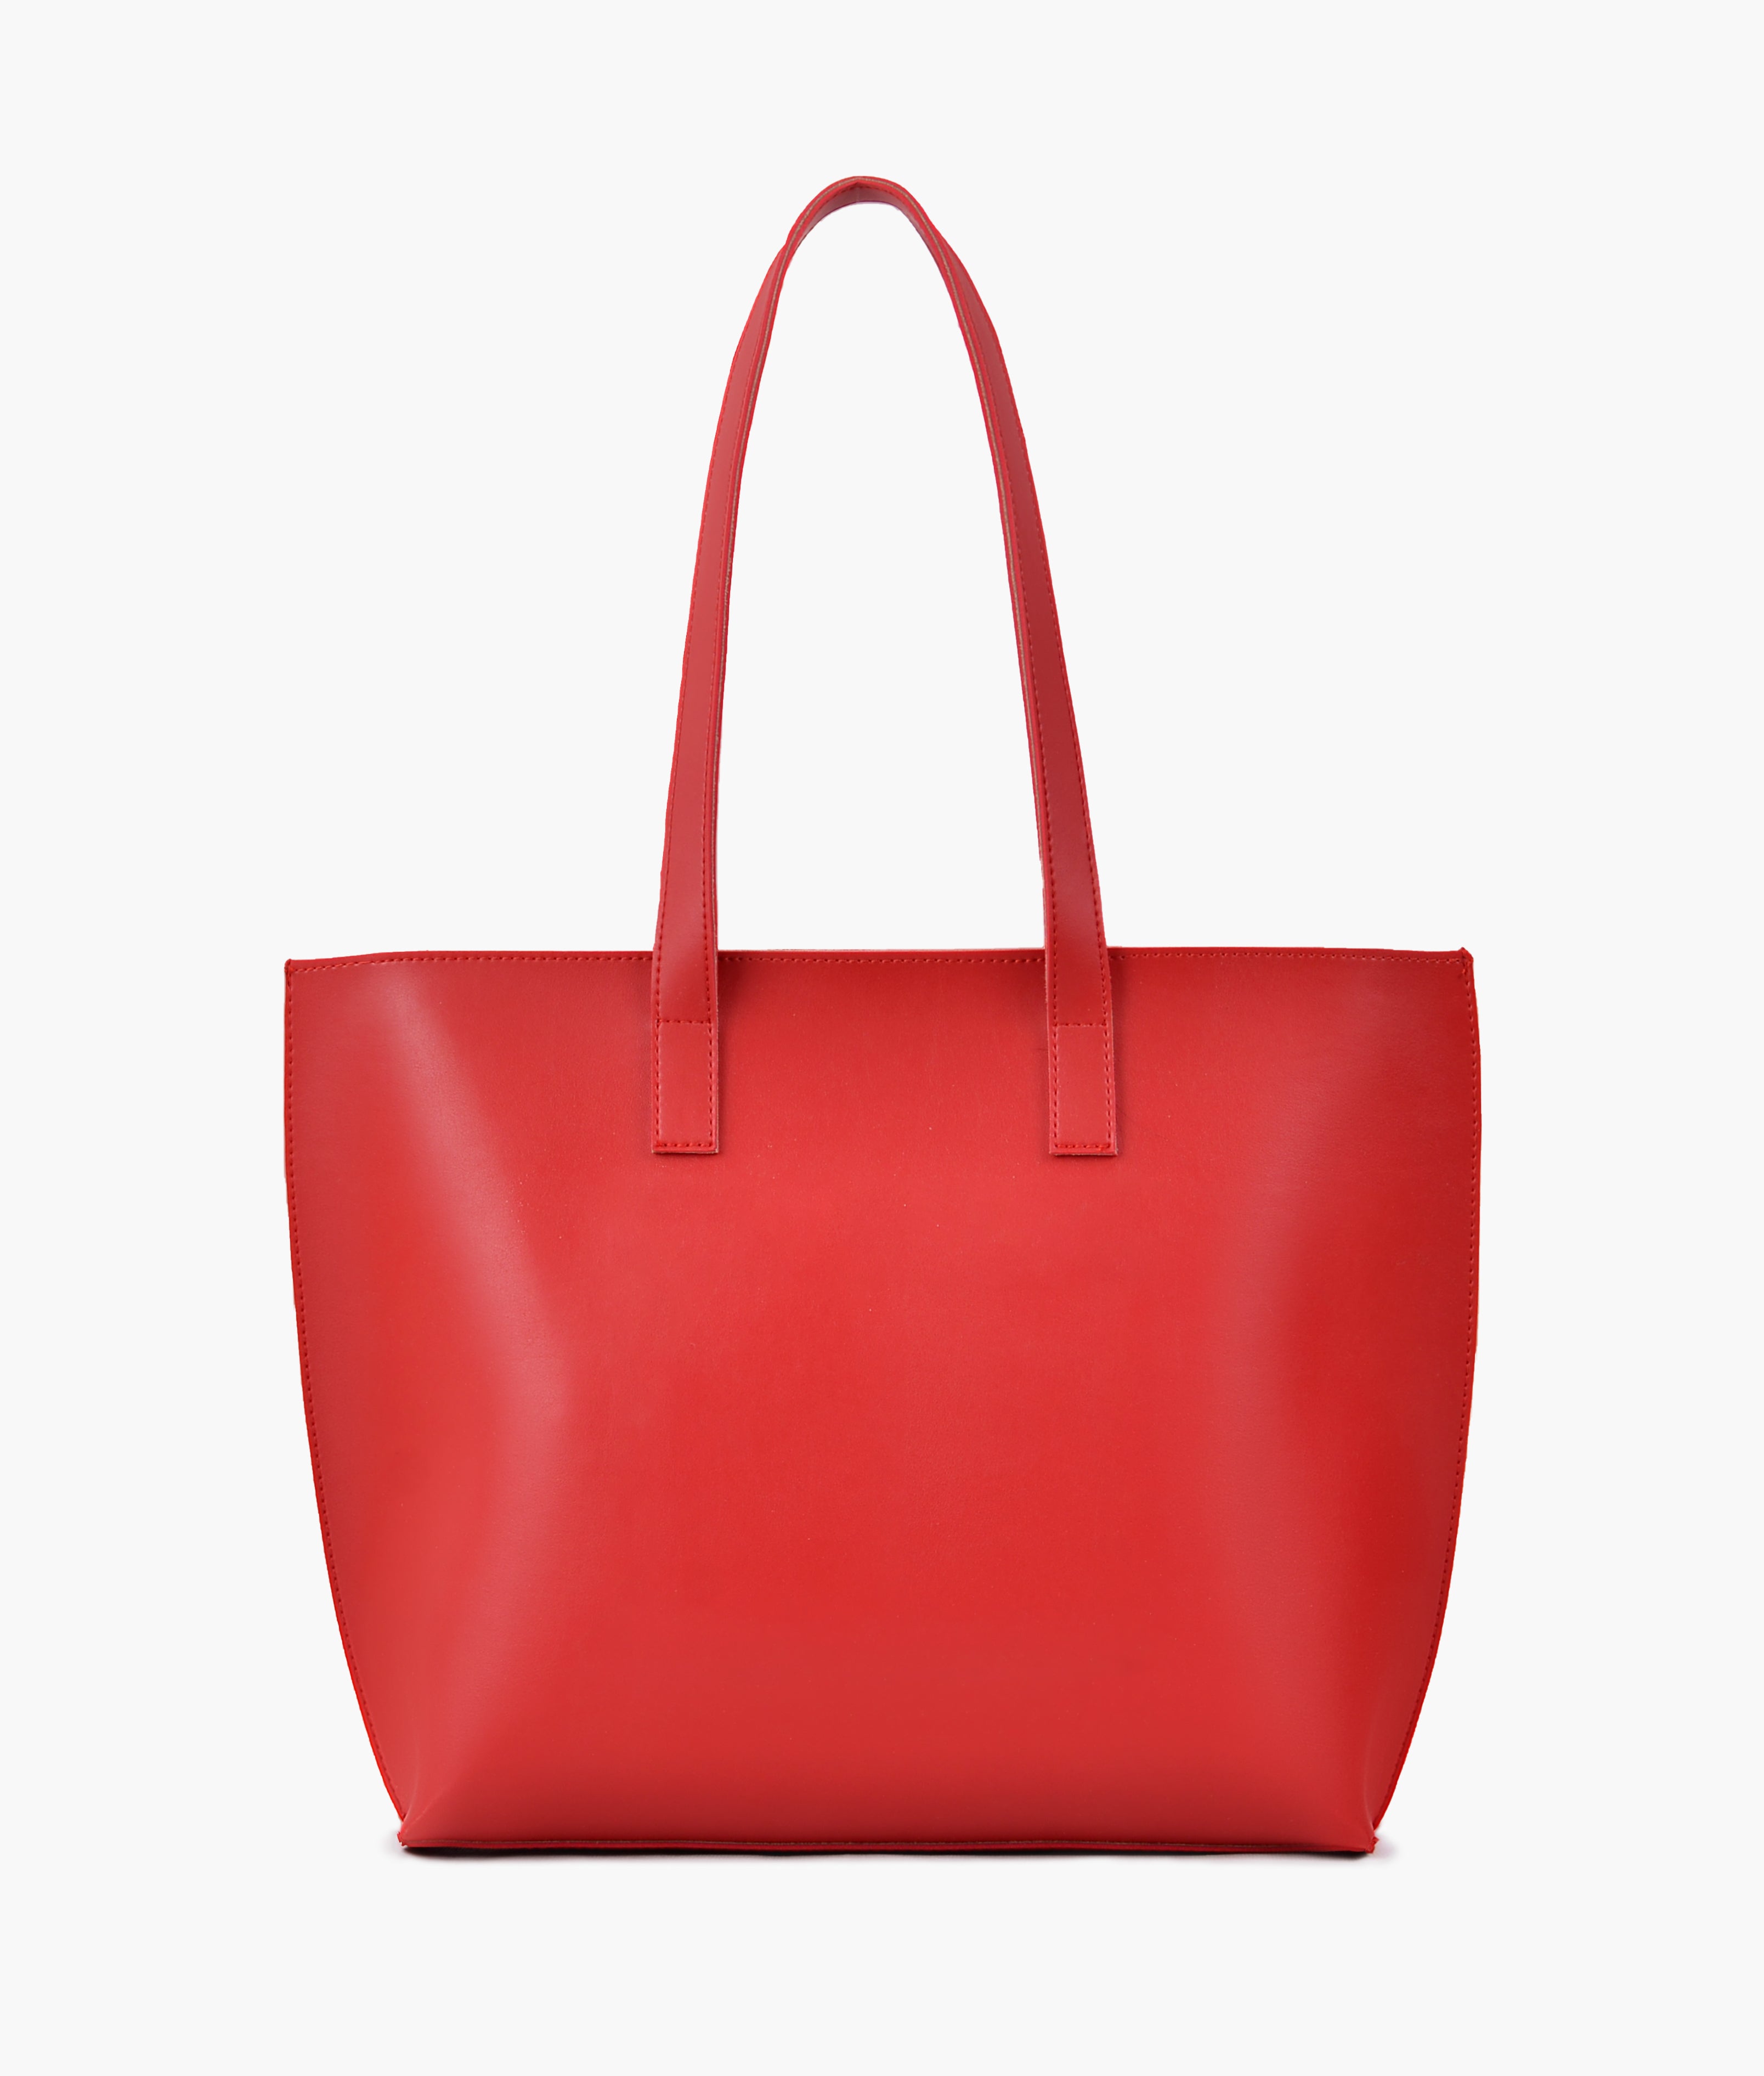 Red long handle tote bag